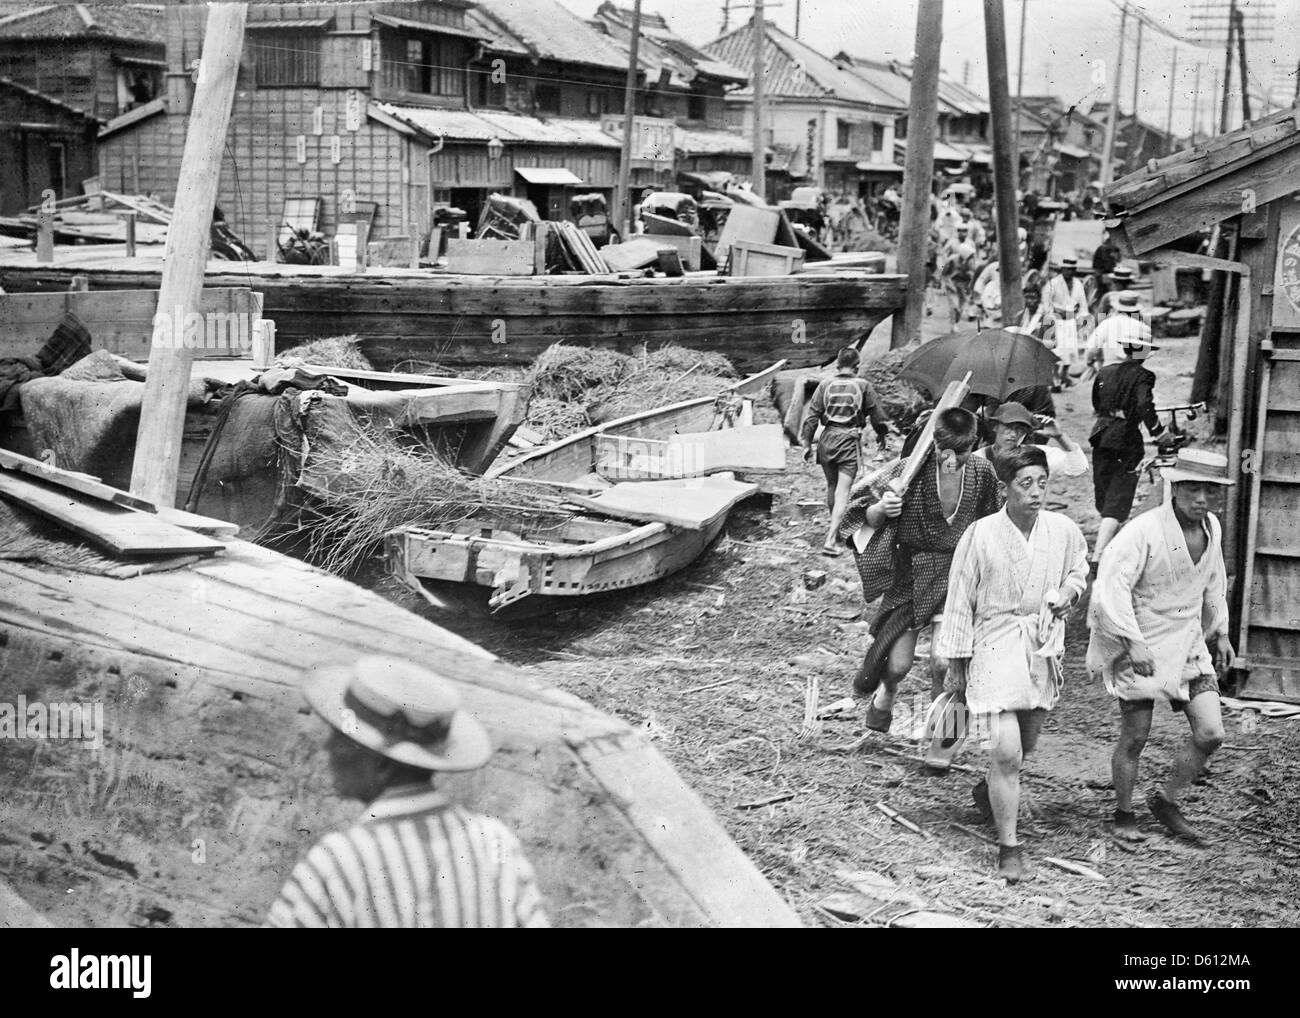 Japanese typhoon - boats washed a mile inland at Tokyo, Japan circa 1911 Stock Photo